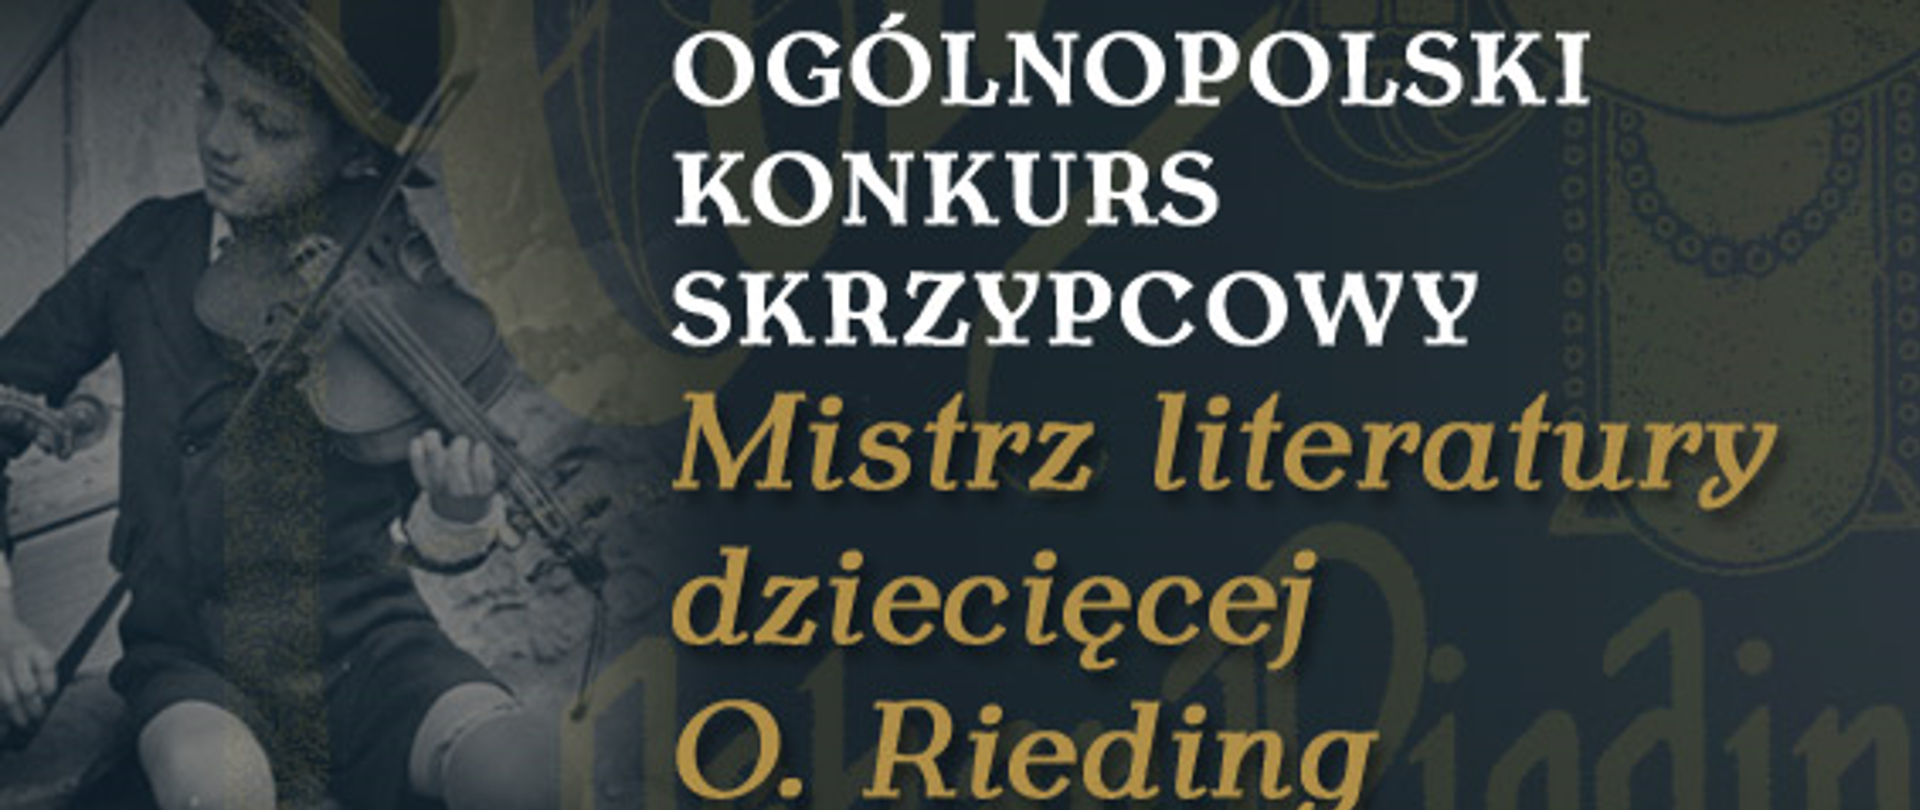 X Ogólnopolski Konkurs Skrzypcowy "Mistrz literatury dziecięcej O. Rieding"